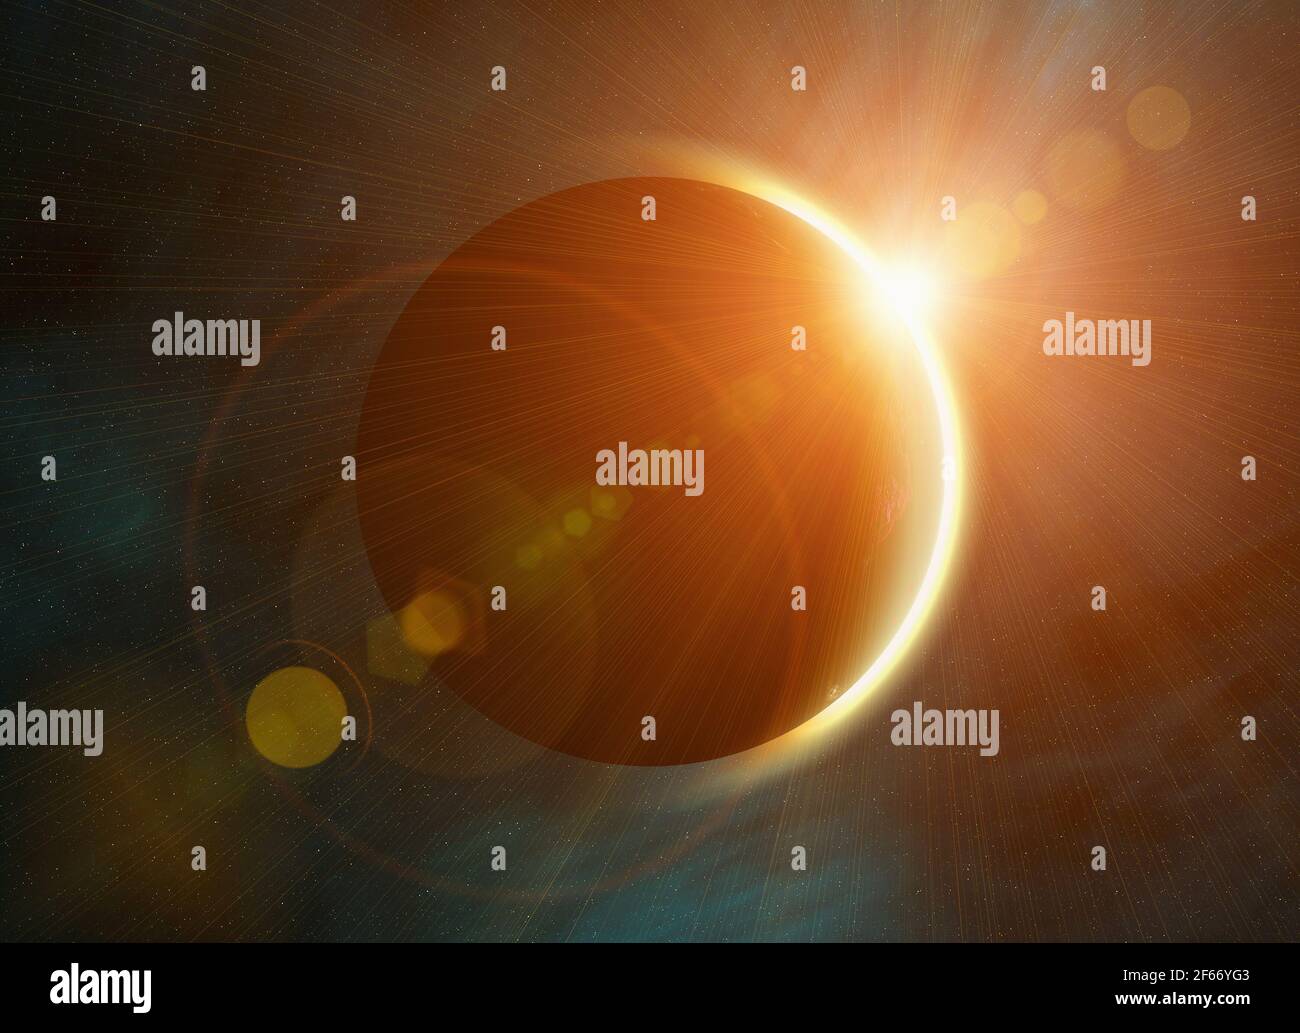 éclipse solaire sur les arrière-plans des étoiles de l'espace. Ce n'est pas une photo de la NASA, cette image rendere avec éclat Banque D'Images